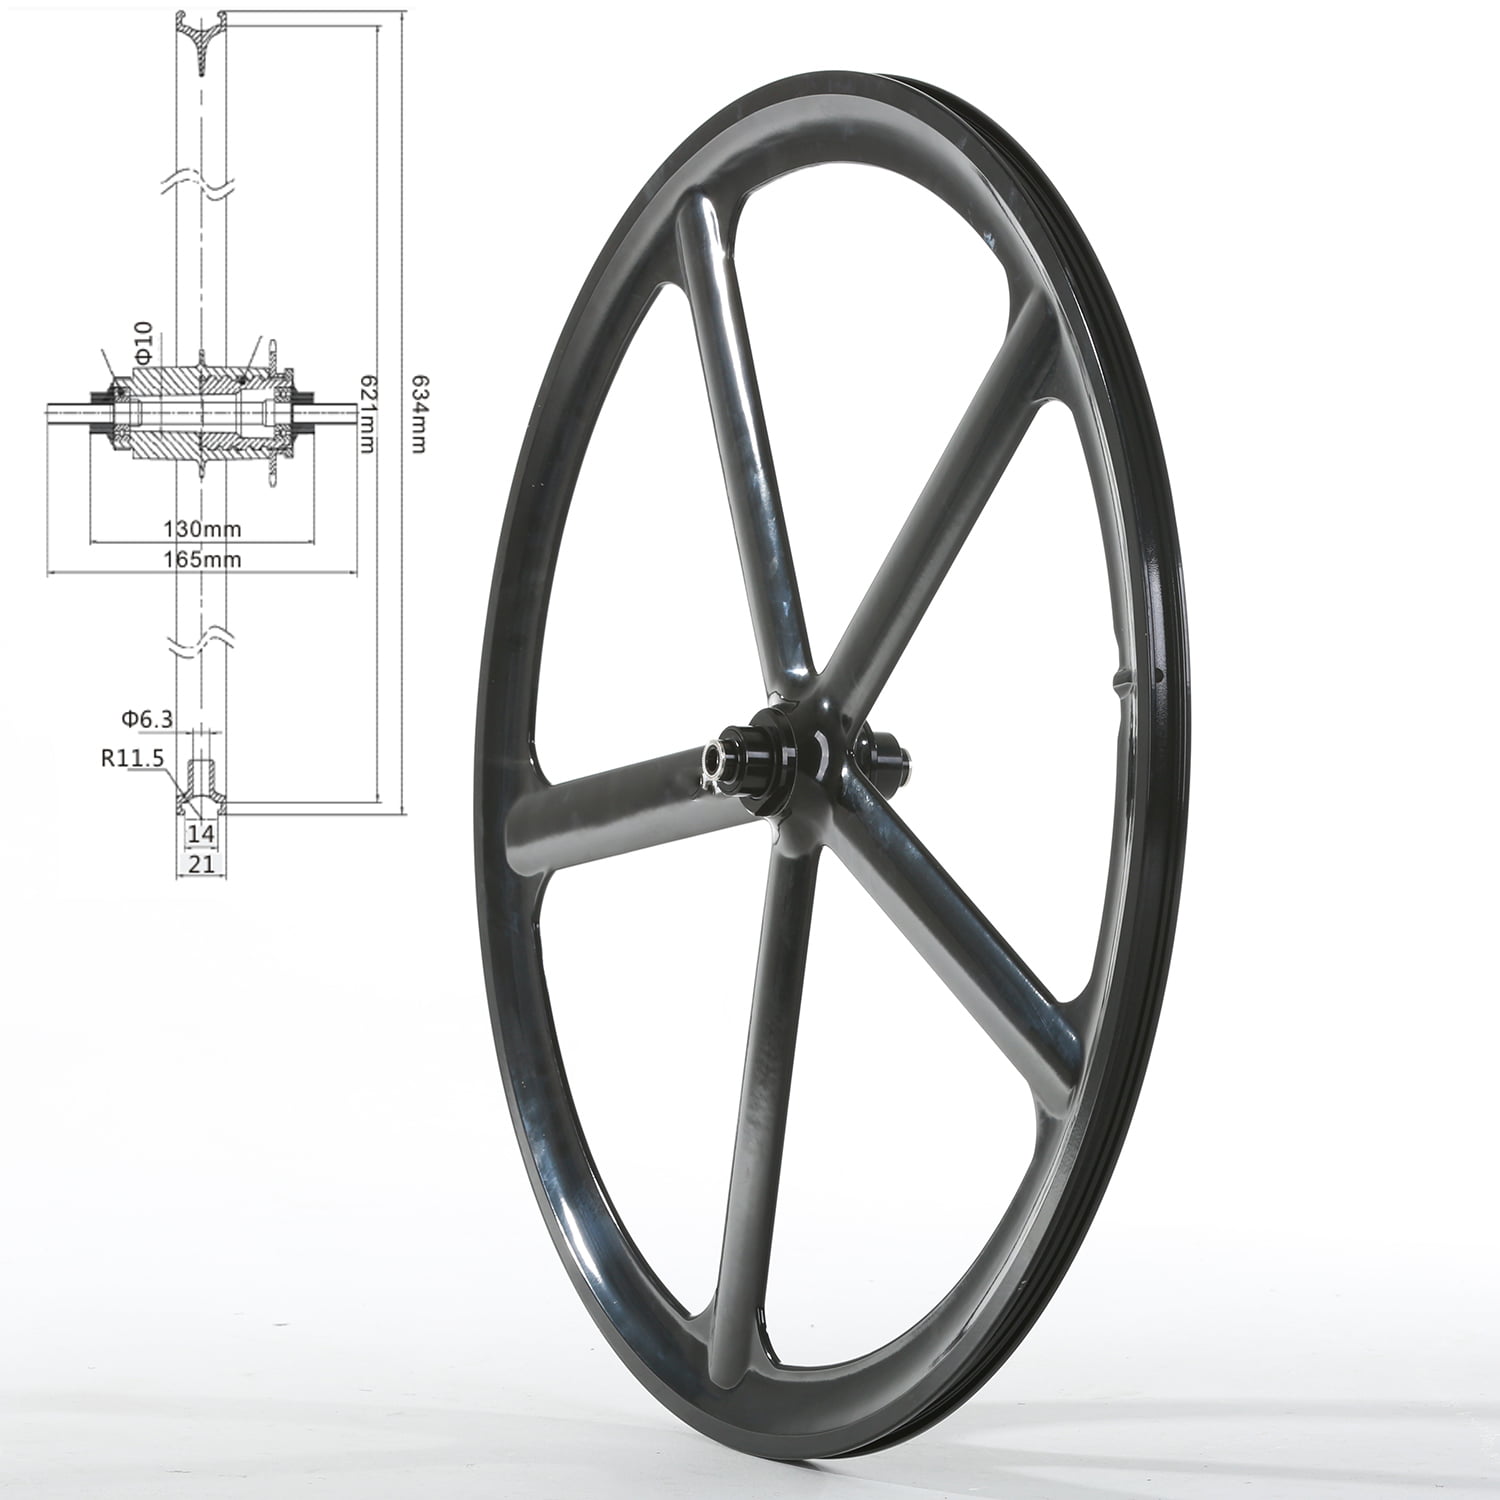 Rear Details about   700c 5 Spoke Fixed Gear Single Speed Bike Fixie Spoke Mag Wheel Rim Front